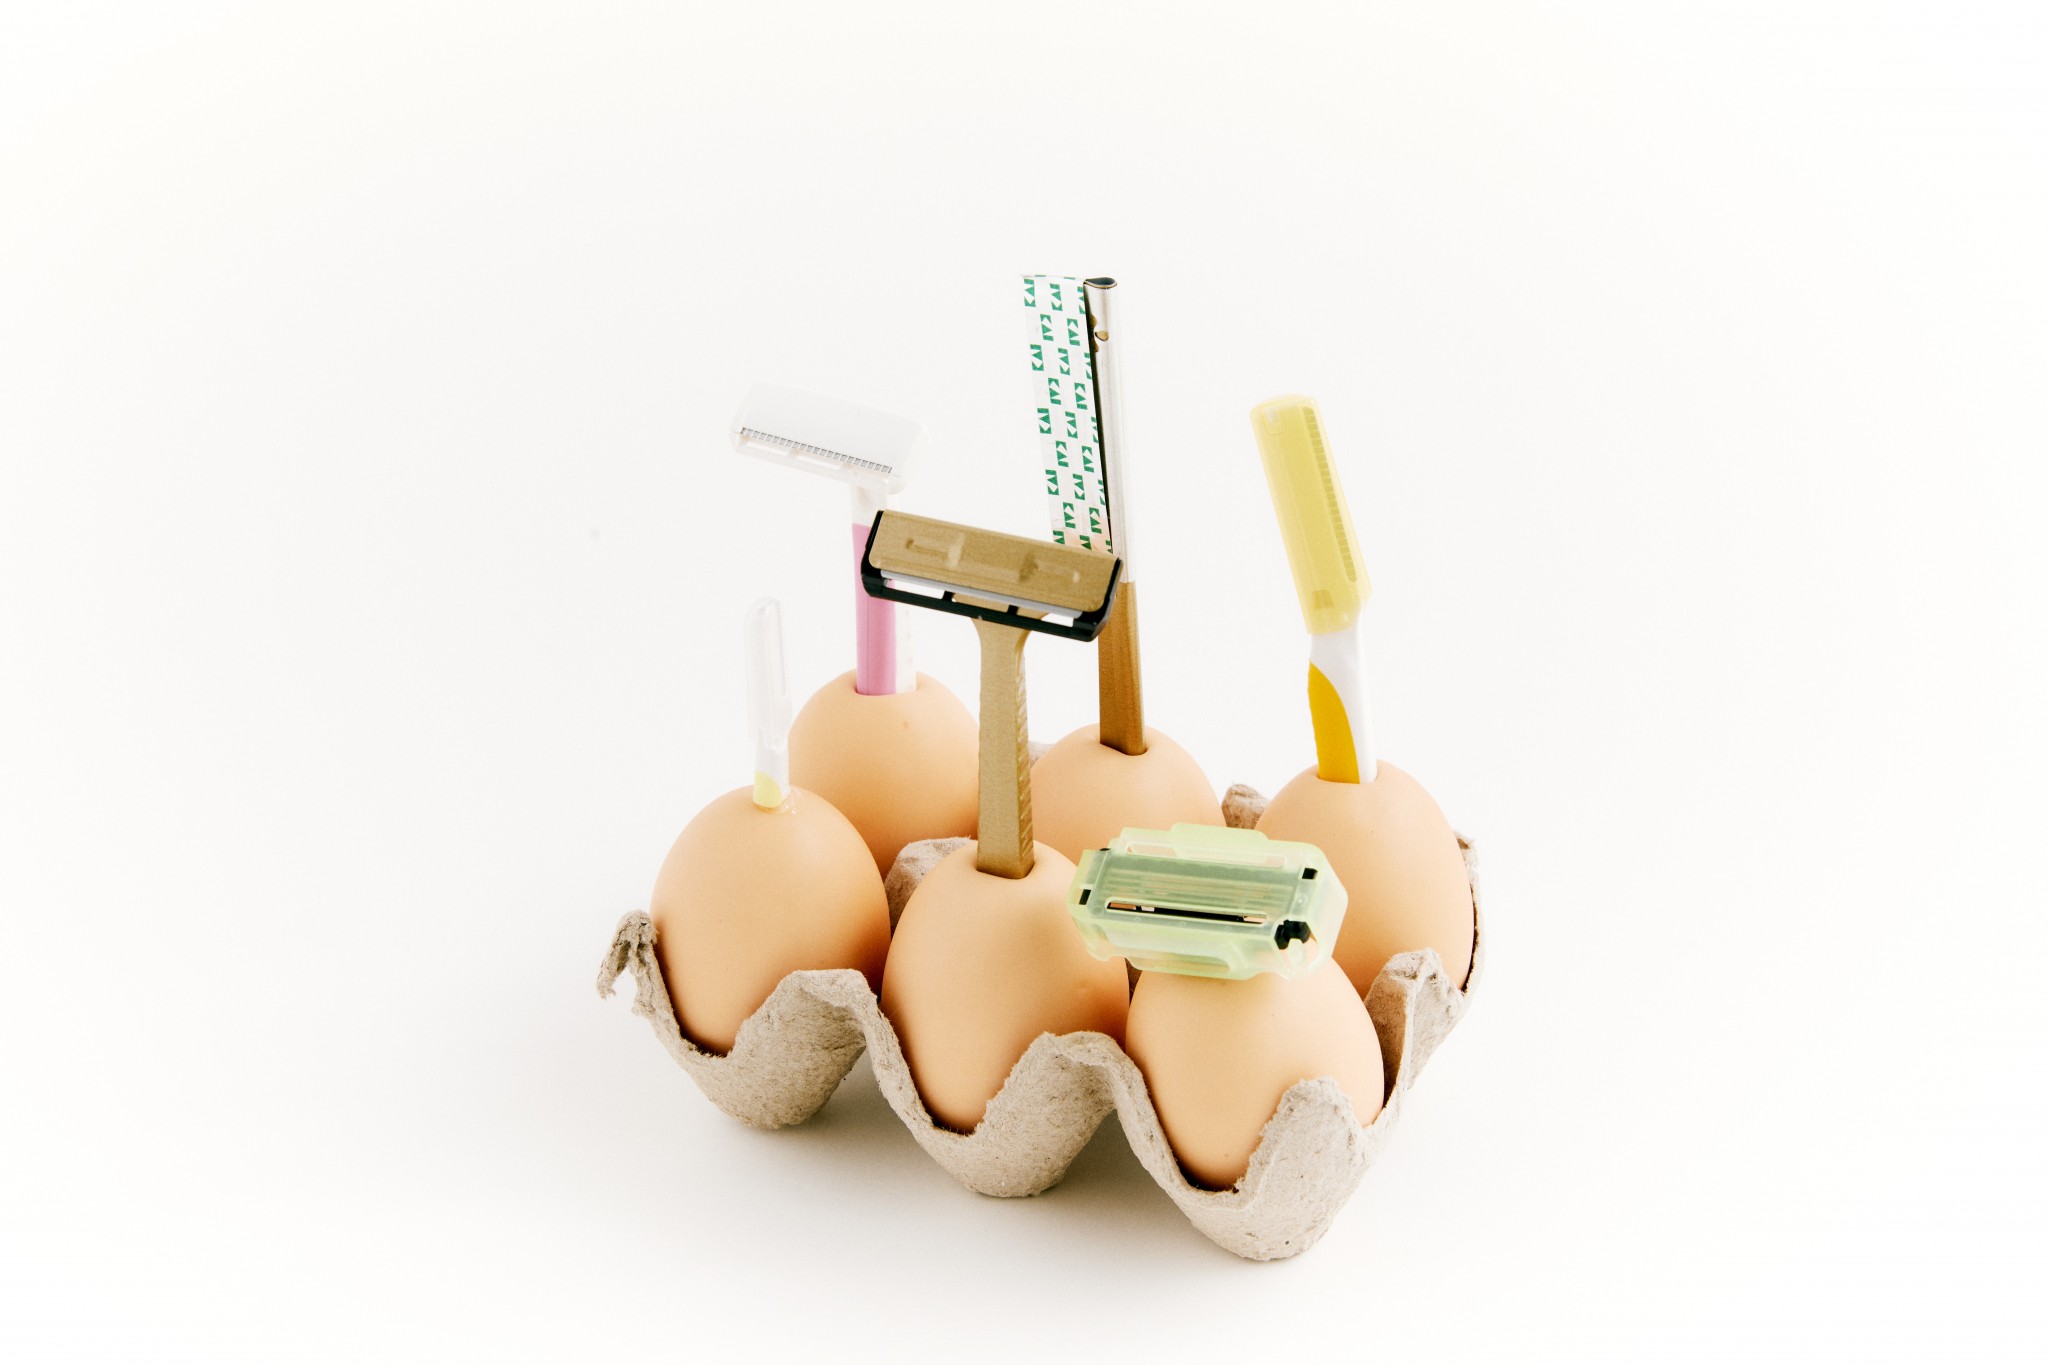 （4）「 ファミリーアソー刀 」：家族みんなのカミソリホルダー。柄が卵ということで、 「やさしく剃ってね」との気持ちも込められている。